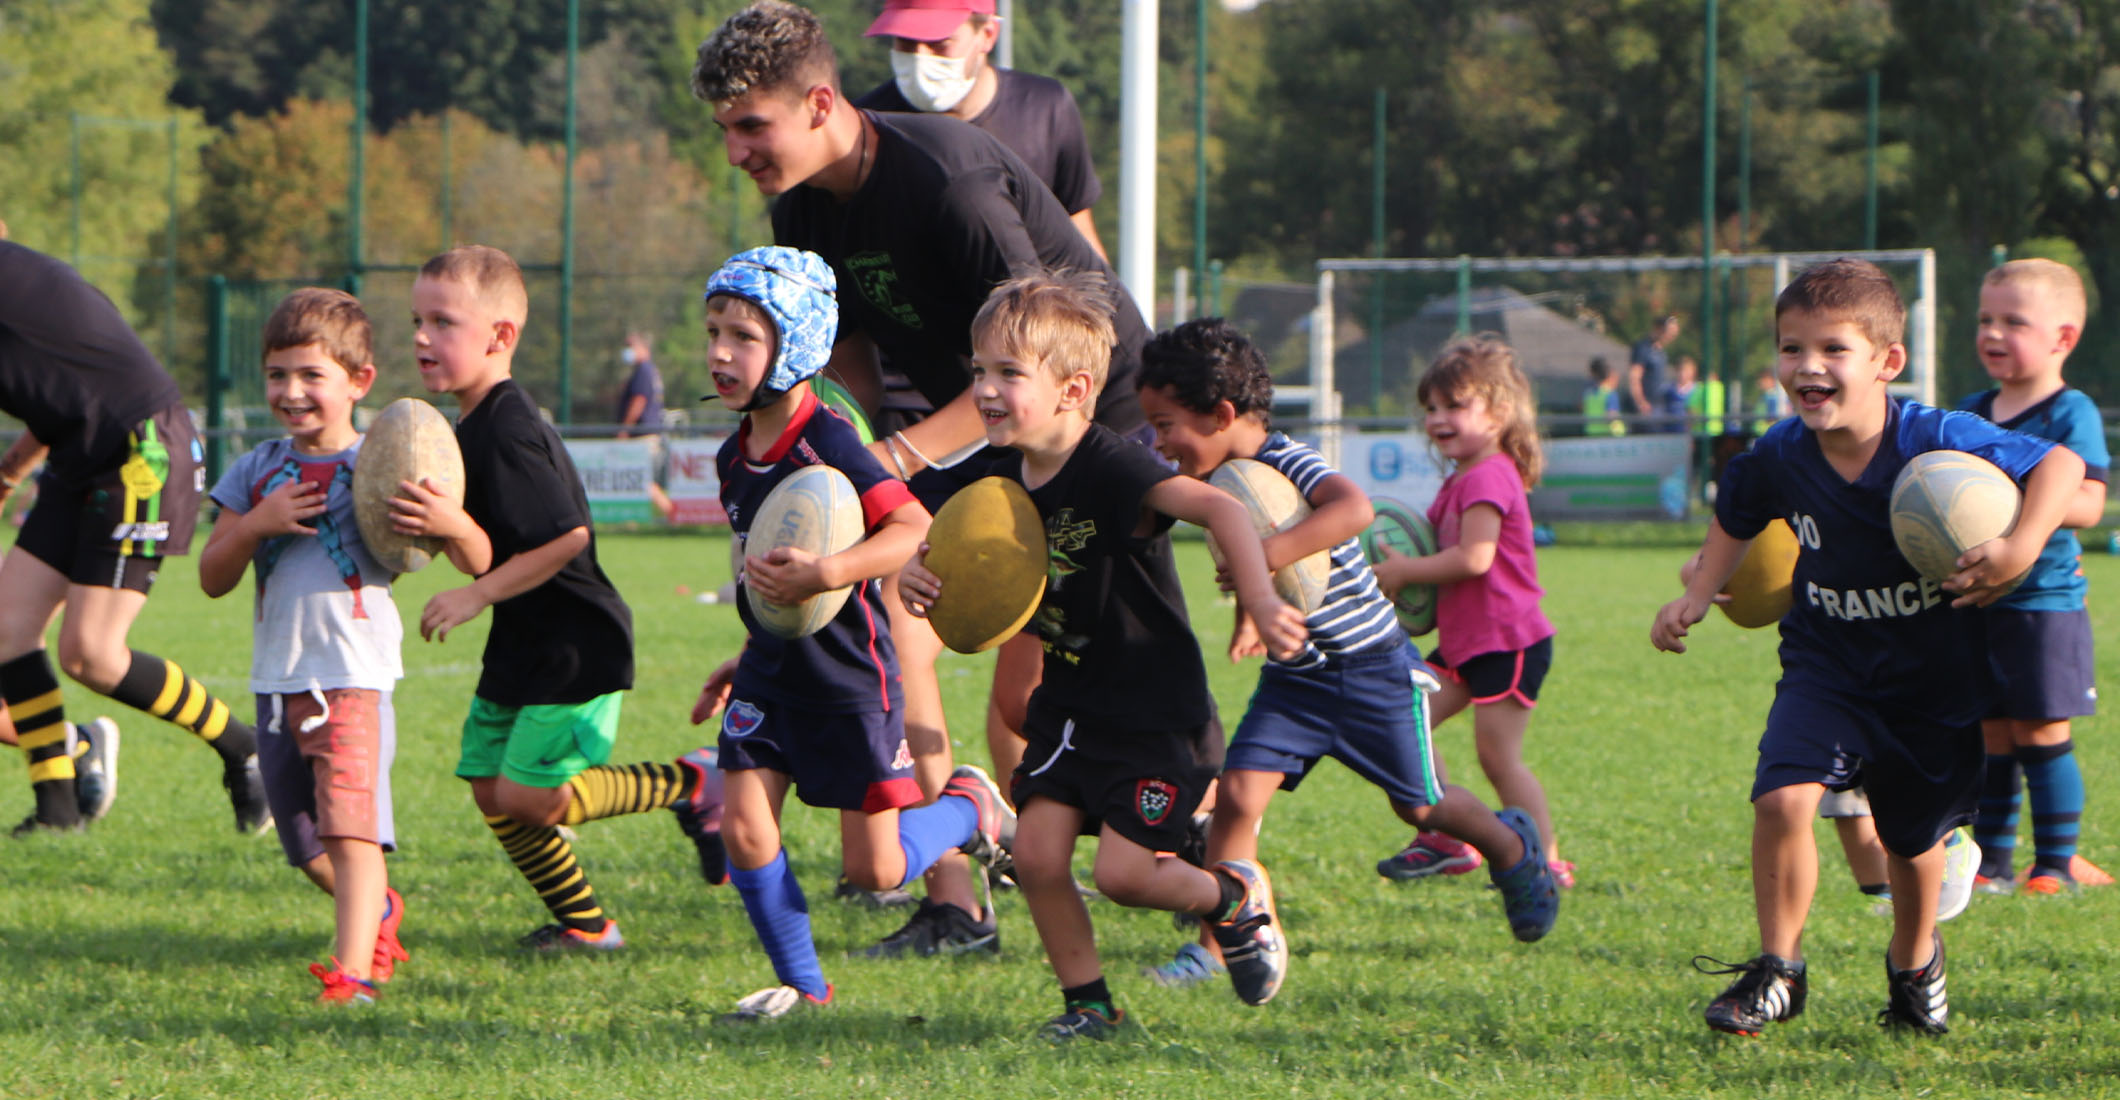 Le Baby Rugby, une nouvelle pratique qui séduit 